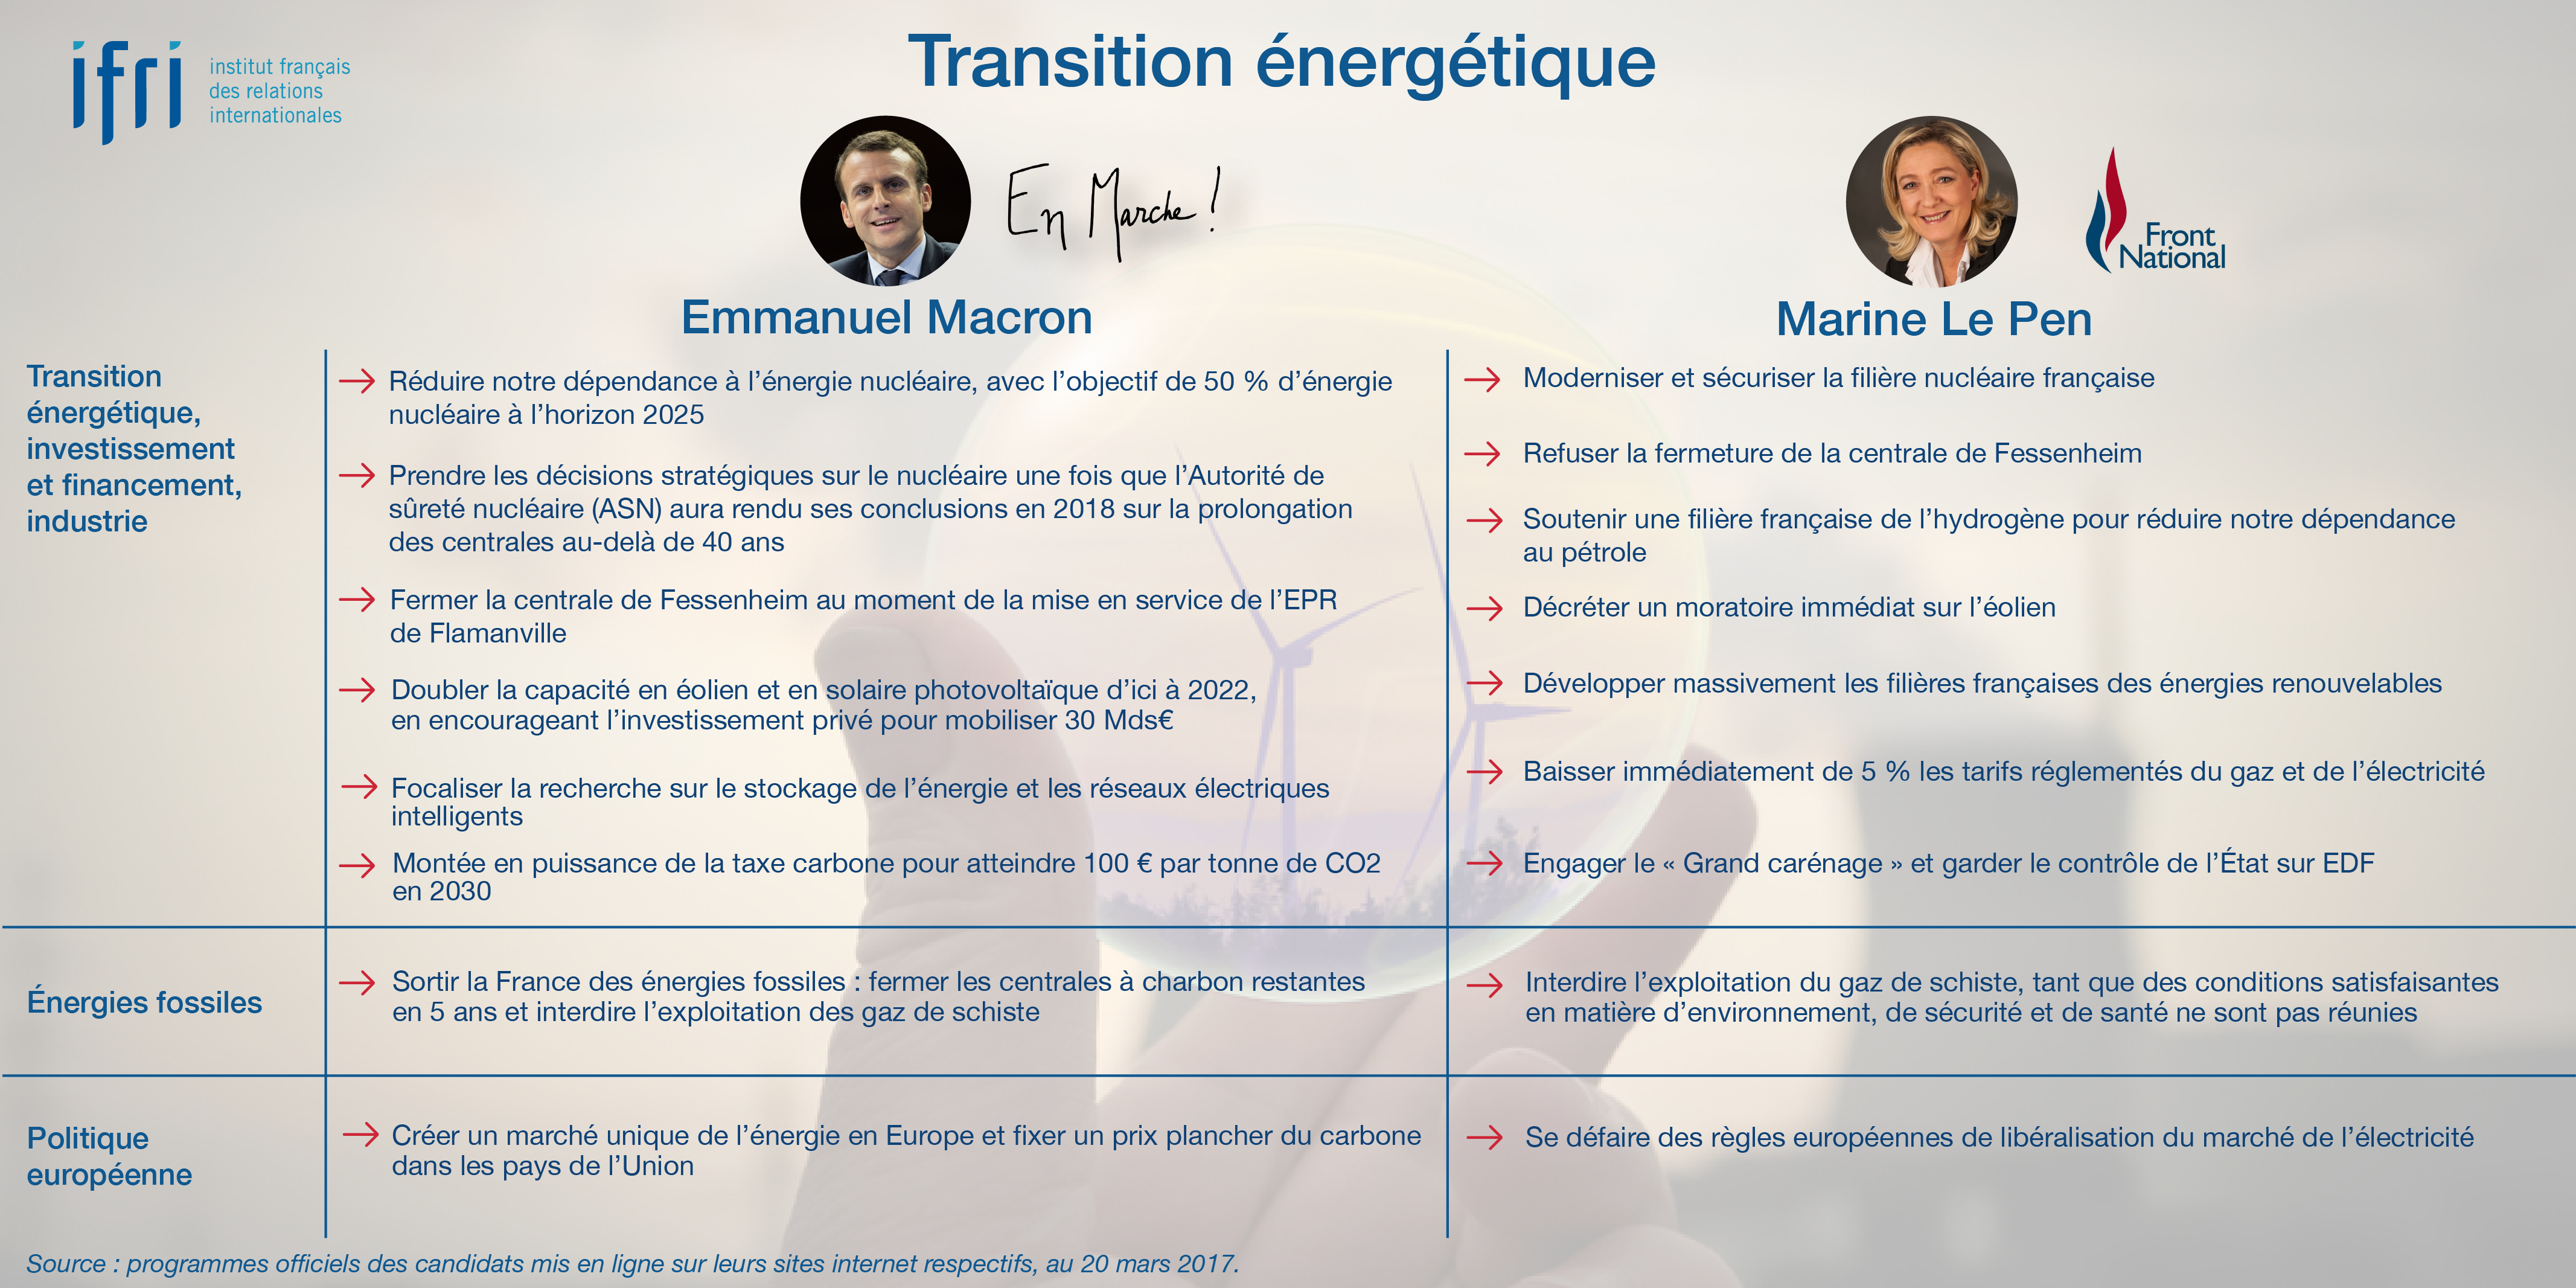 Transition énergétique - Macron - Le Pen - Présidentielle 2017